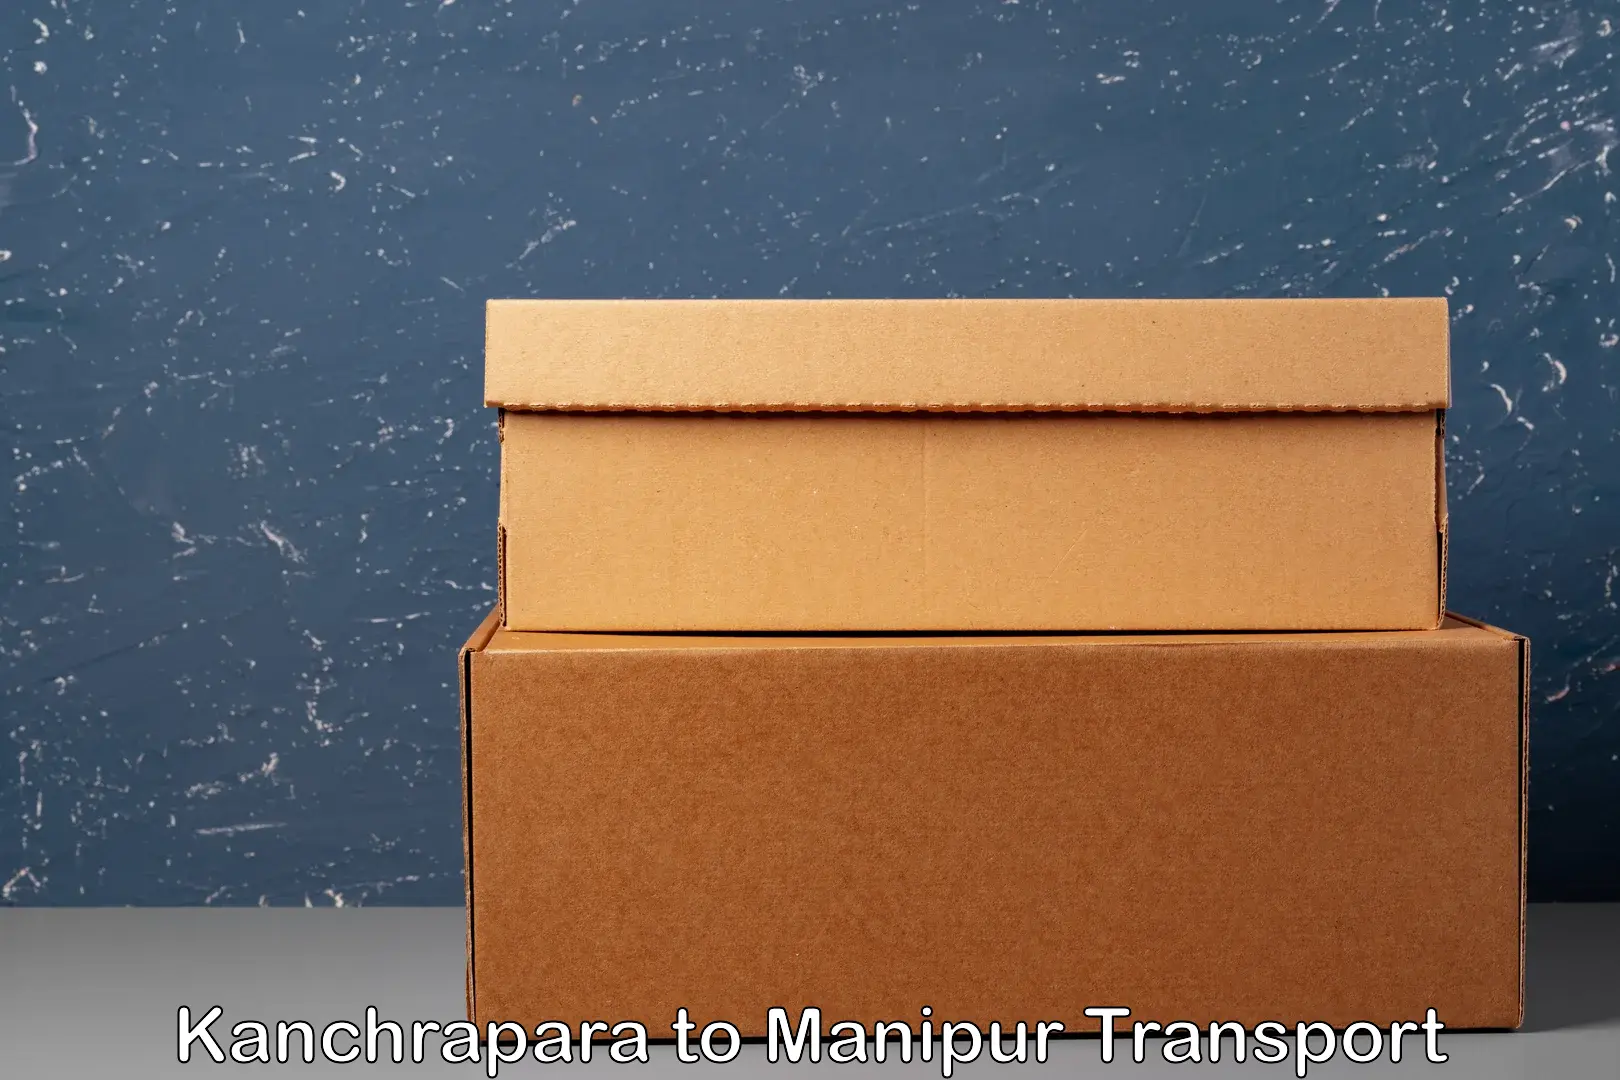 Two wheeler parcel service Kanchrapara to Manipur